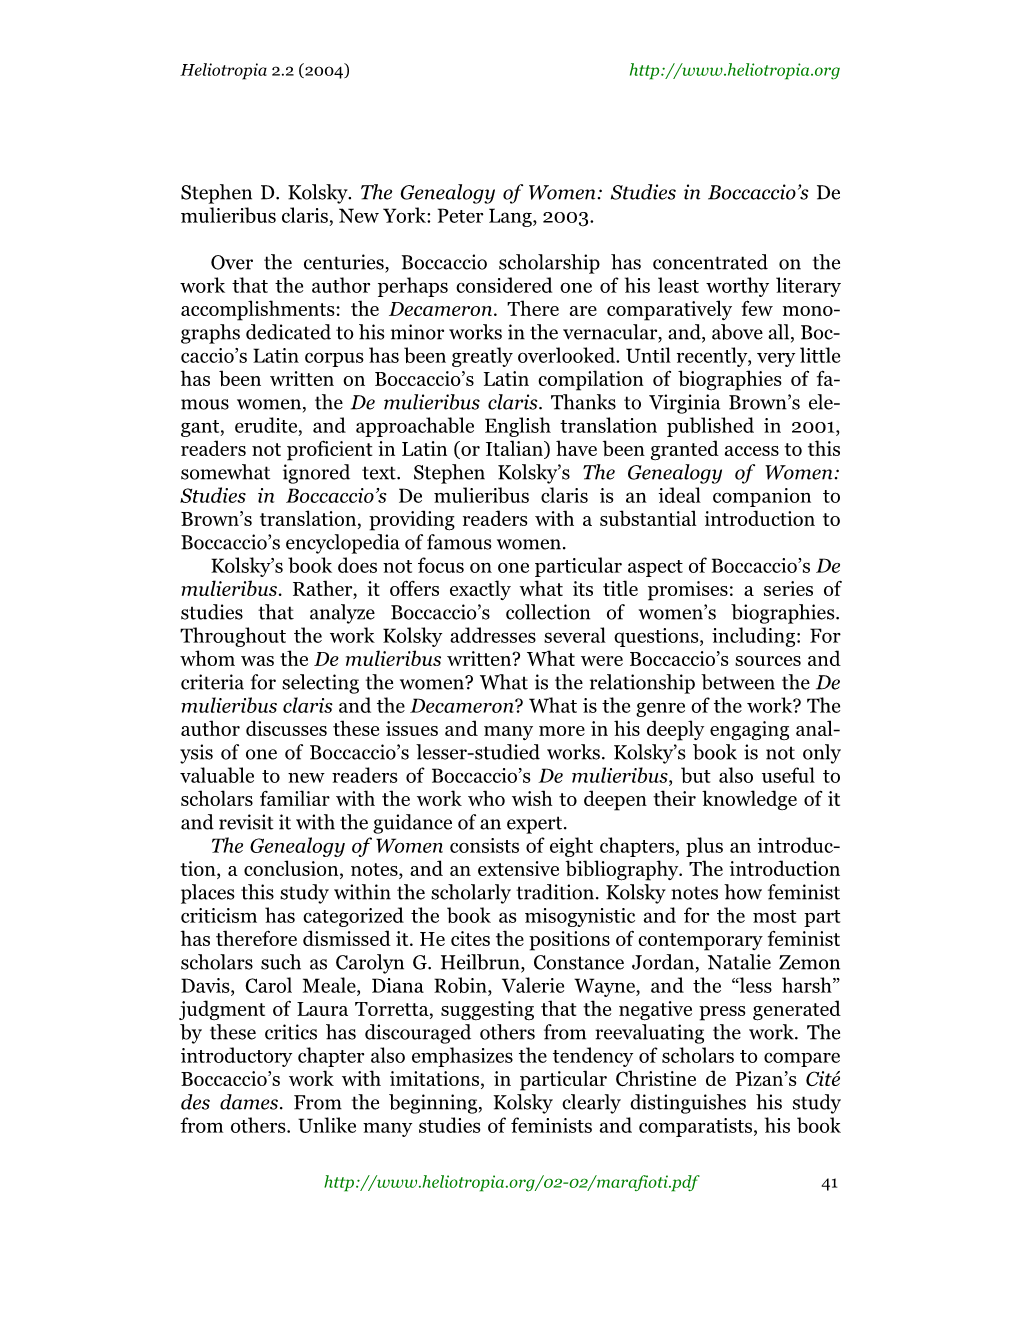 Stephen D. Kolsky. the Genealogy of Women: Studies in Boccaccio's De